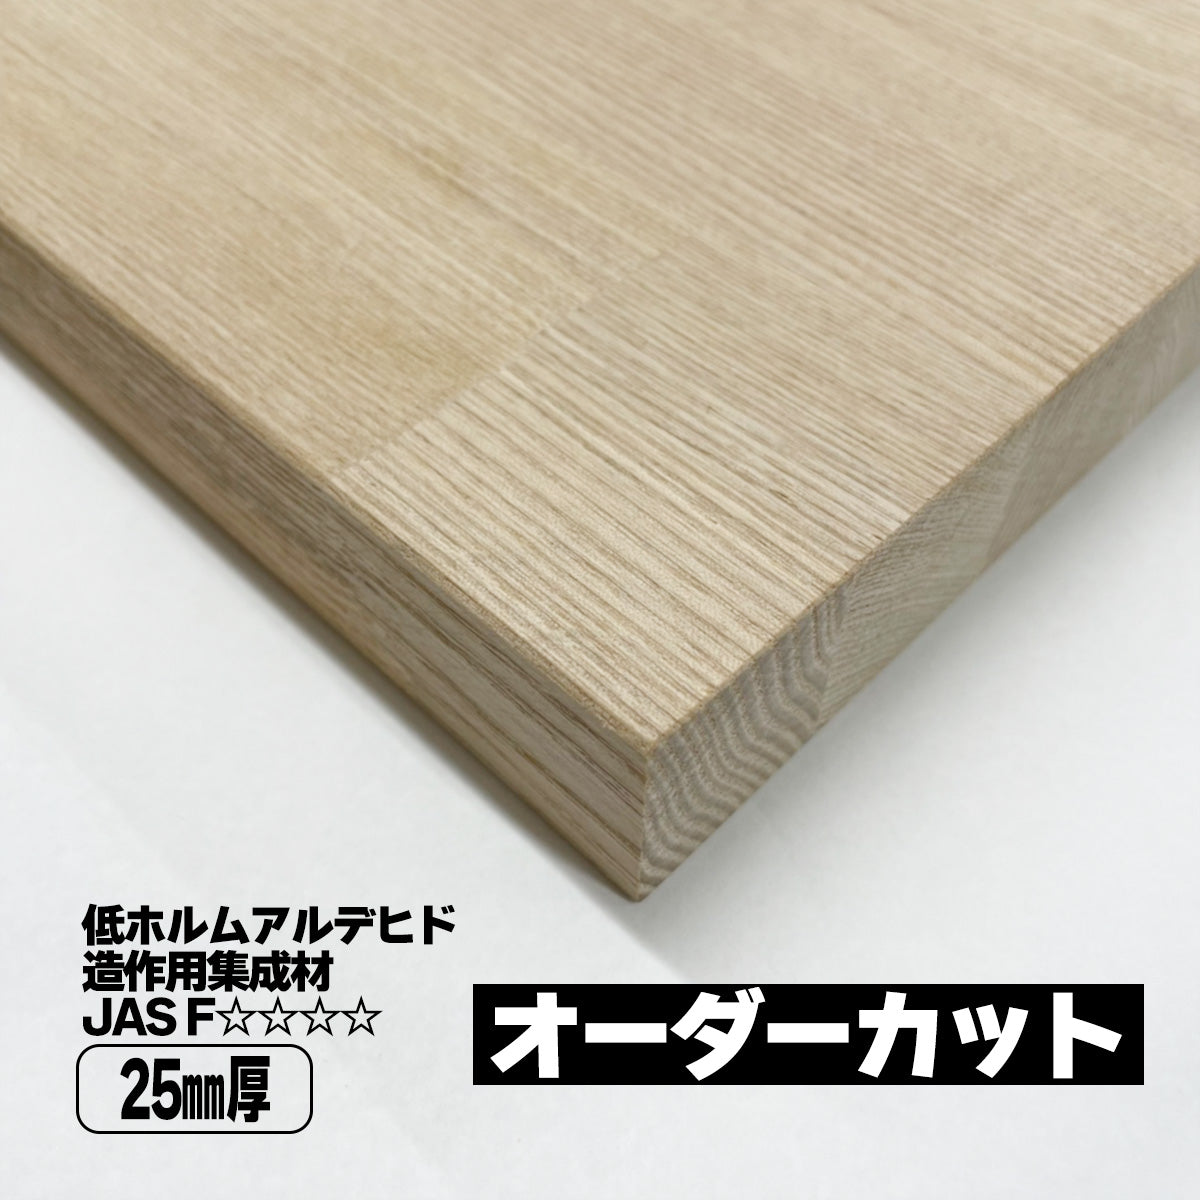 木材 タモ集成材 25mm 厚み 端材 天板 棚板 各種パーツ